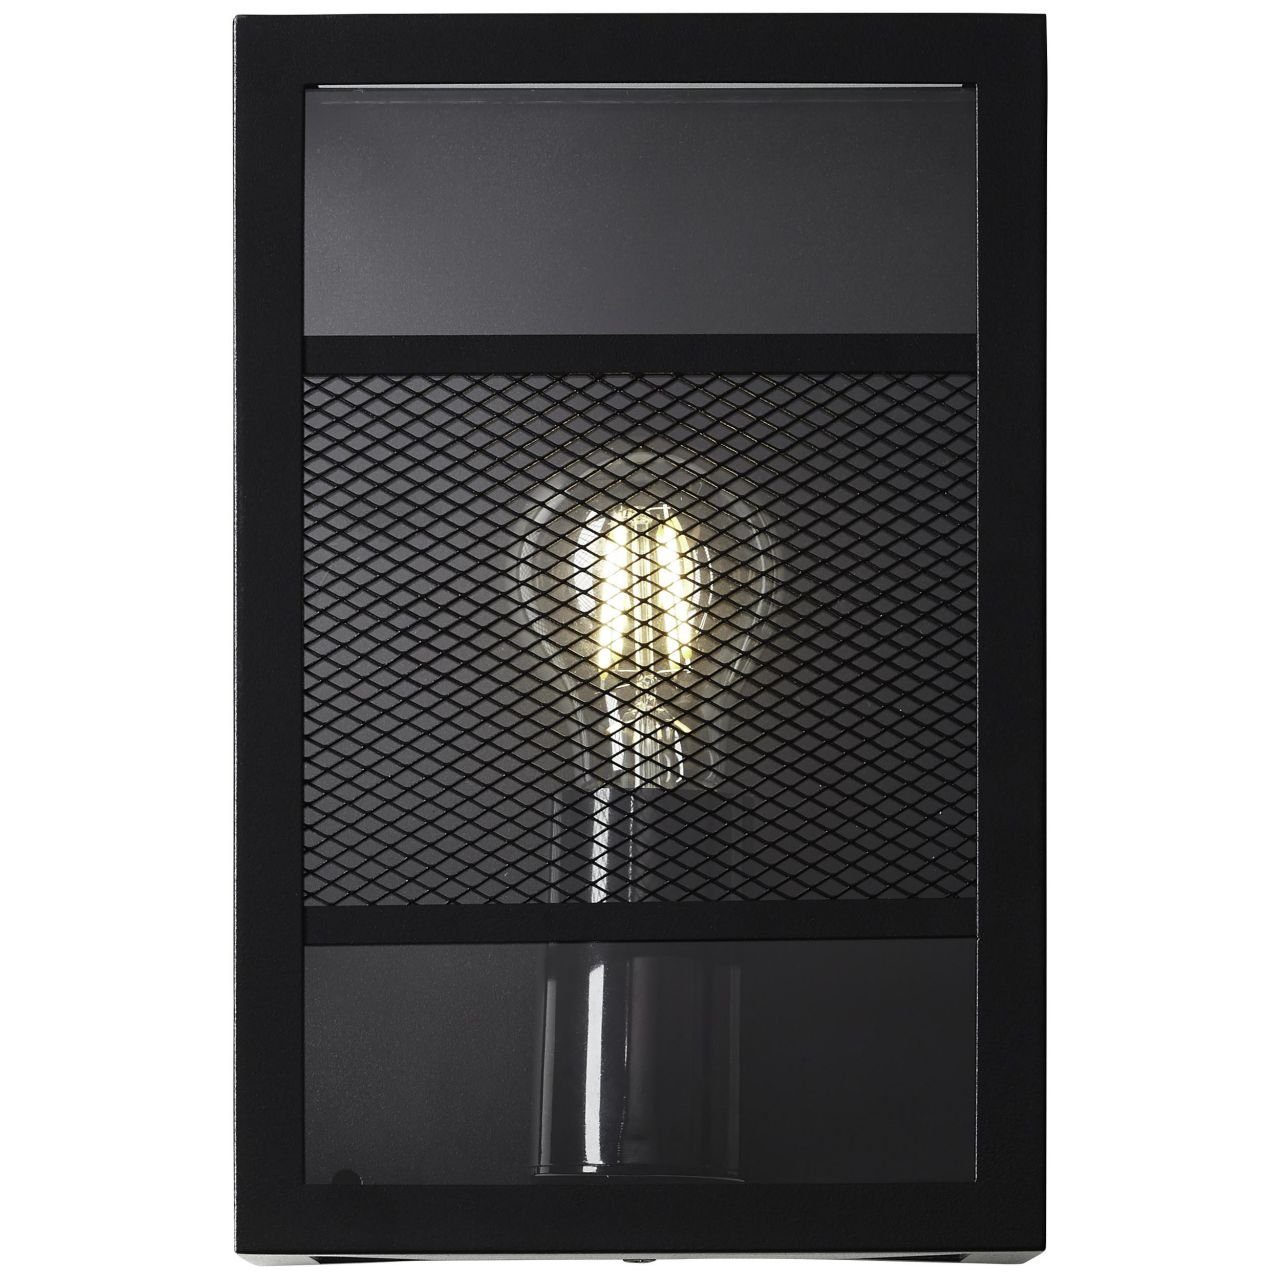 Brilliant LED Außen-Wandleuchte Getta, Lampe, 1x schwarz, Außenwandleuchte Metall/Kunststoff, A60, Getta E27